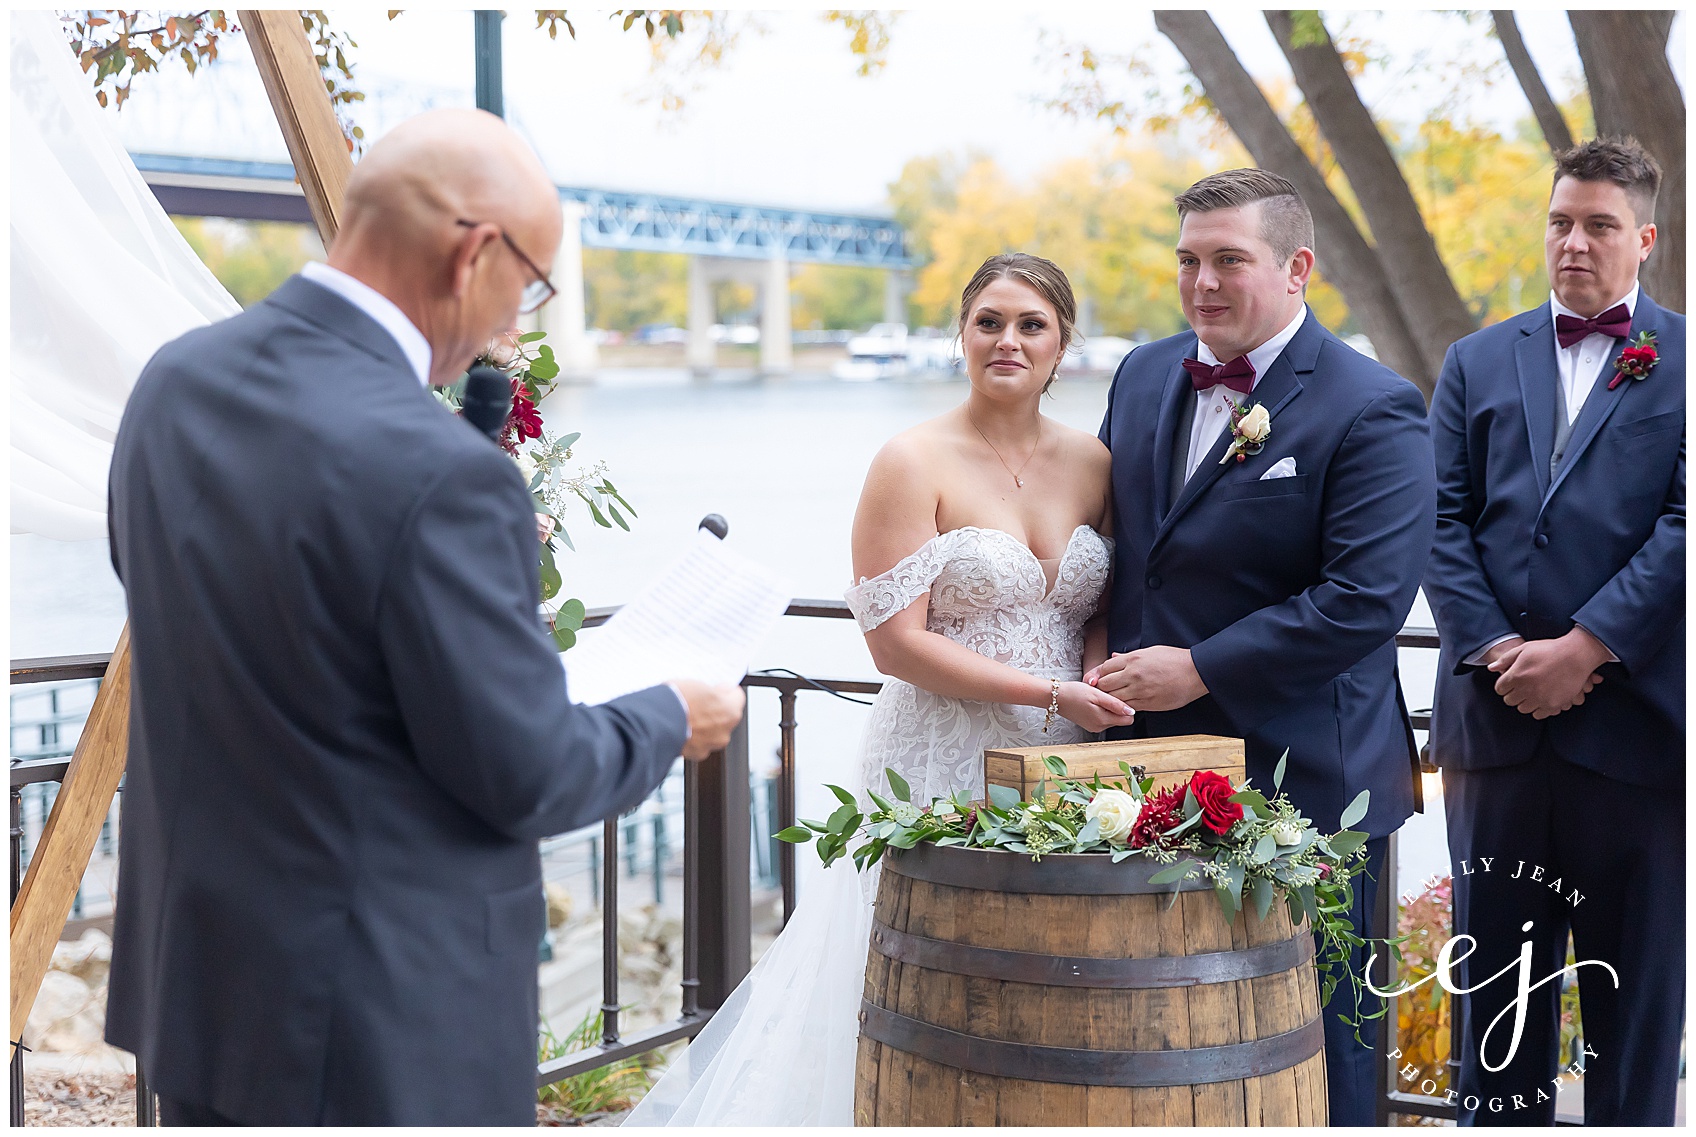 bride and groom wedding ceremony with wine ceremony